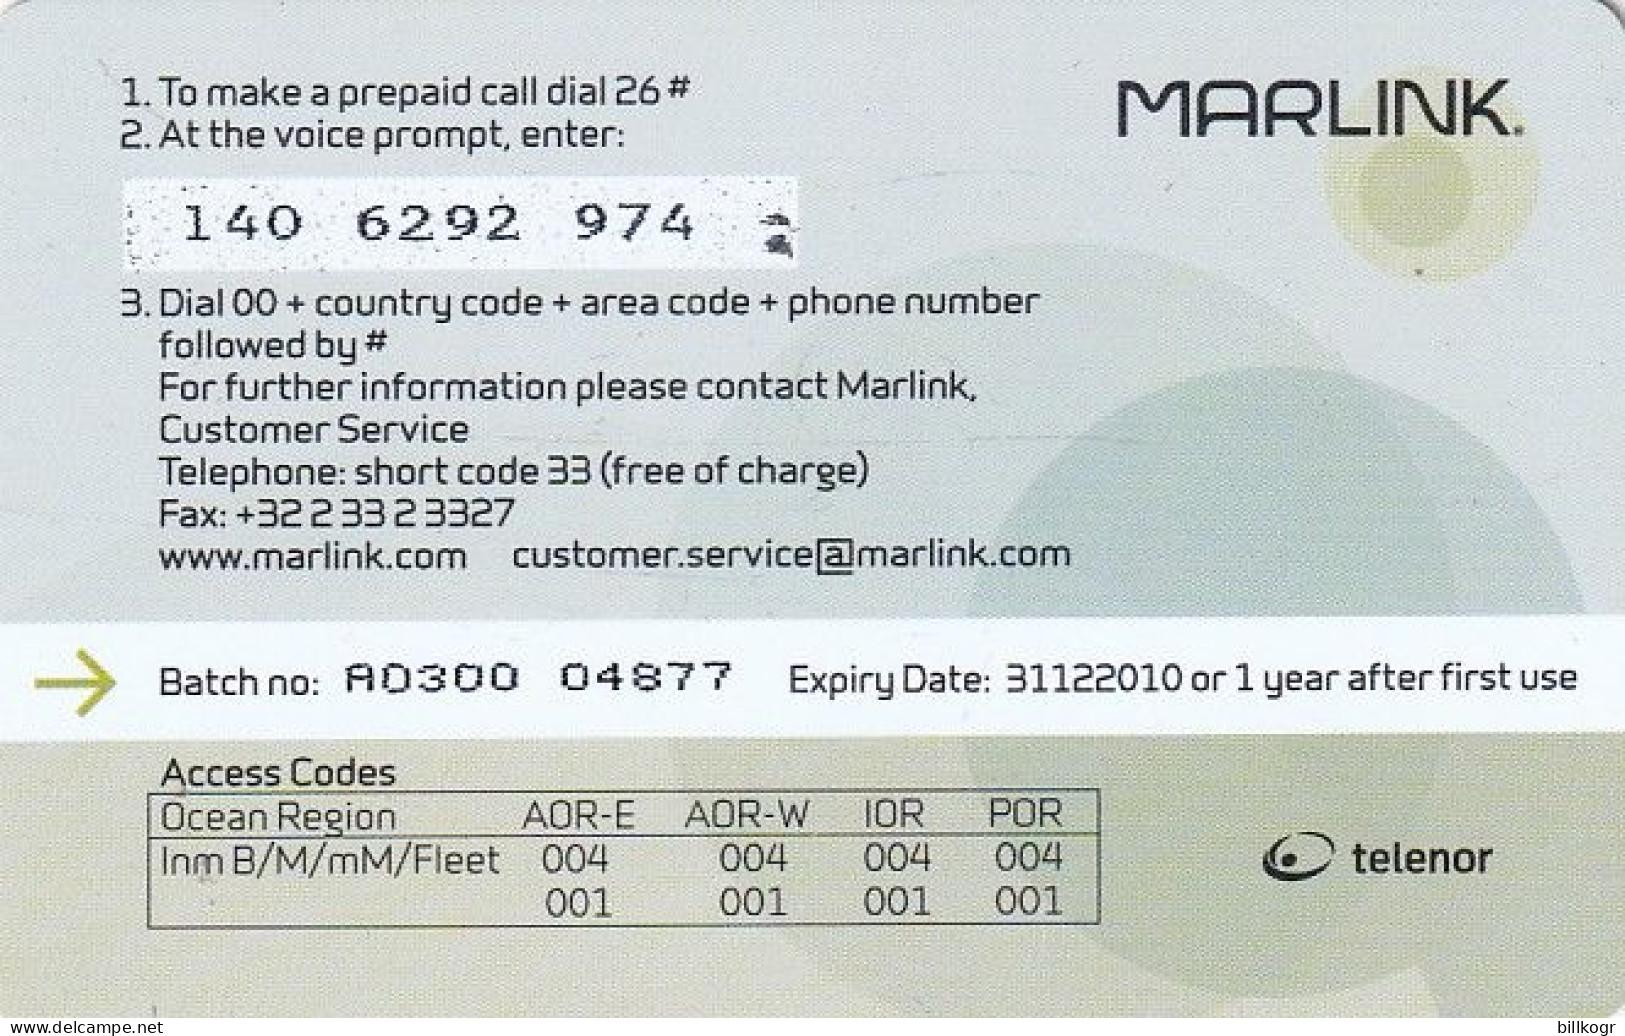 NORWAY - Marlink/Telenor Satellite Prepaid Calling Card 300 Units, Exp.date 31/12/10, Used - Noorwegen